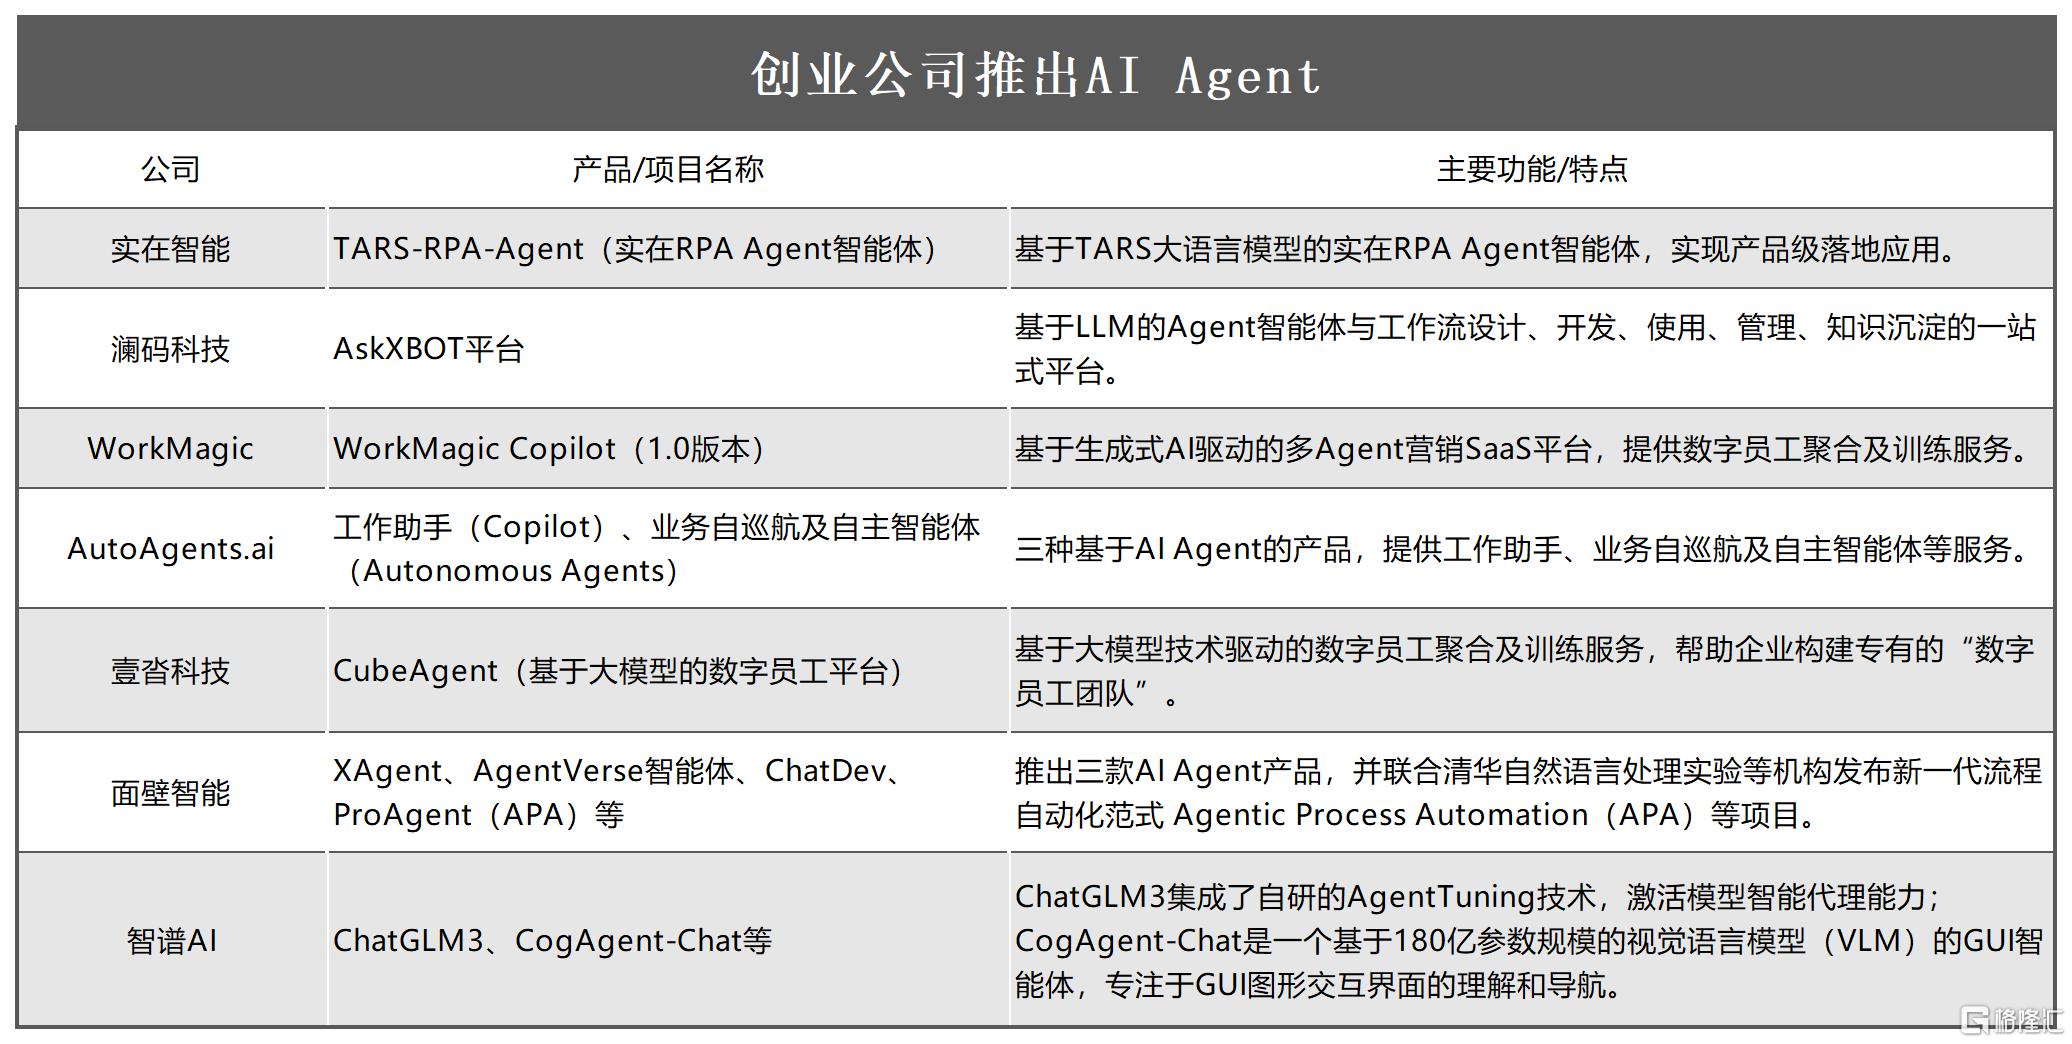 创业公司推出AI Agent_Sheet1.png